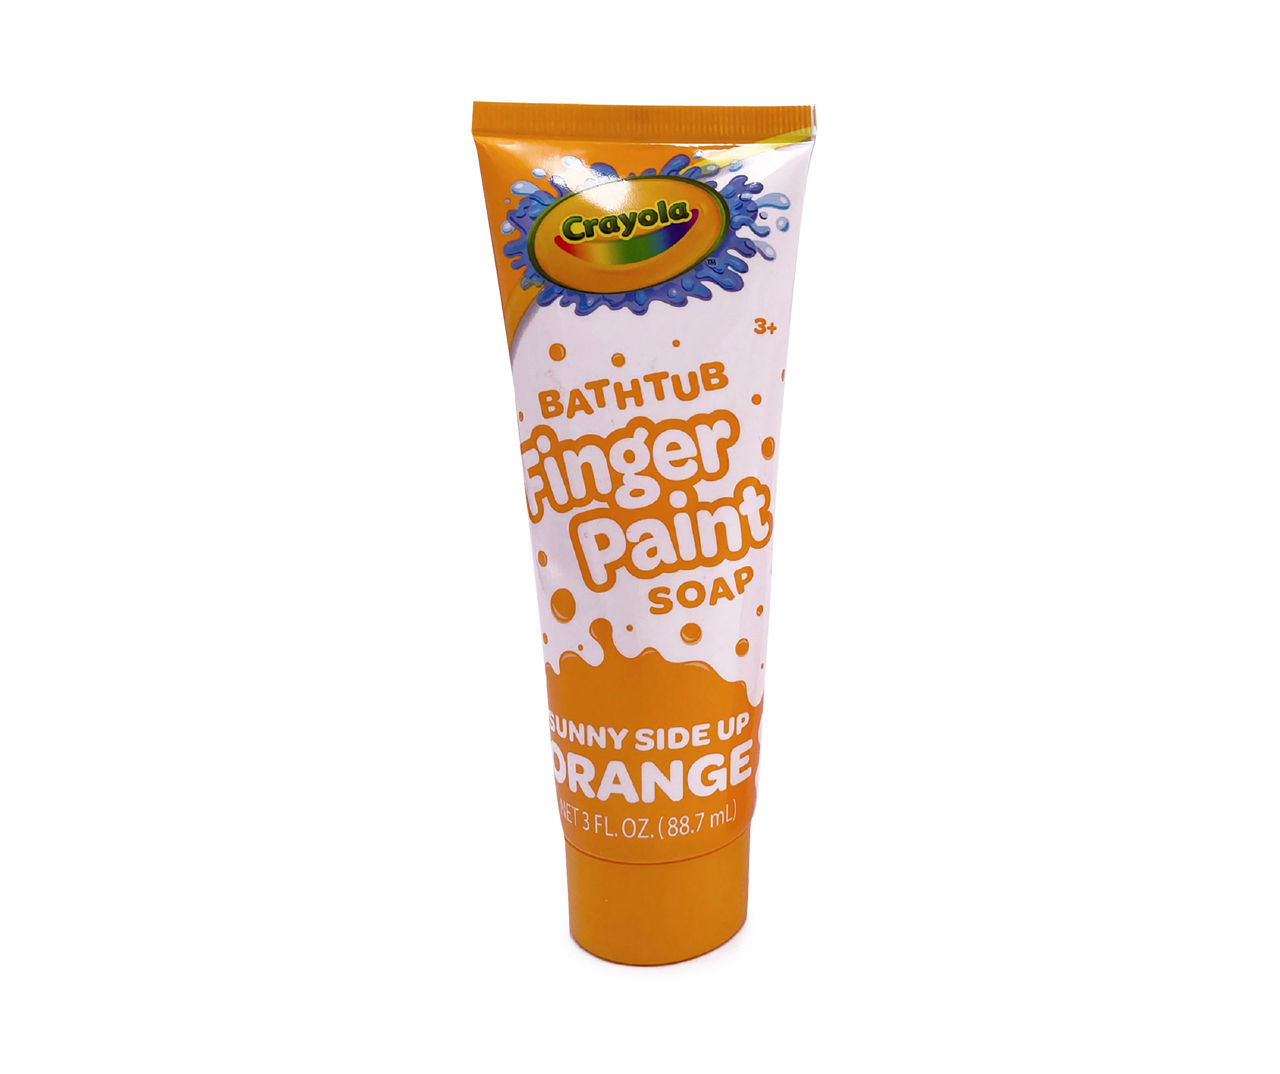 Crayola Orange Bathtub Finger Paint Soap, 3 Oz.